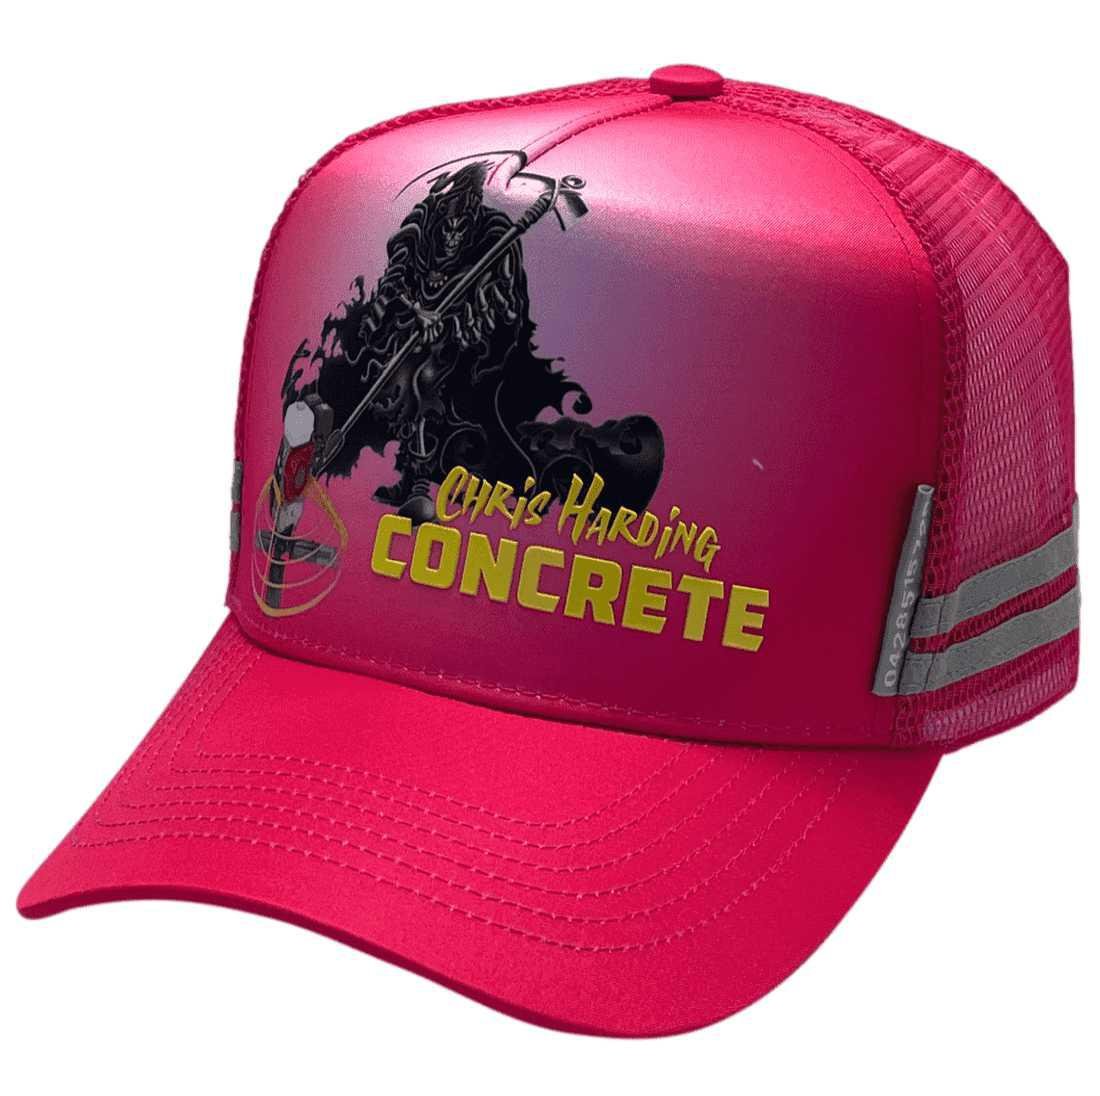 Chris Harding Concrete HP Midrange Aussie Trucker Hat Microfibre/Cotton Hot Pink